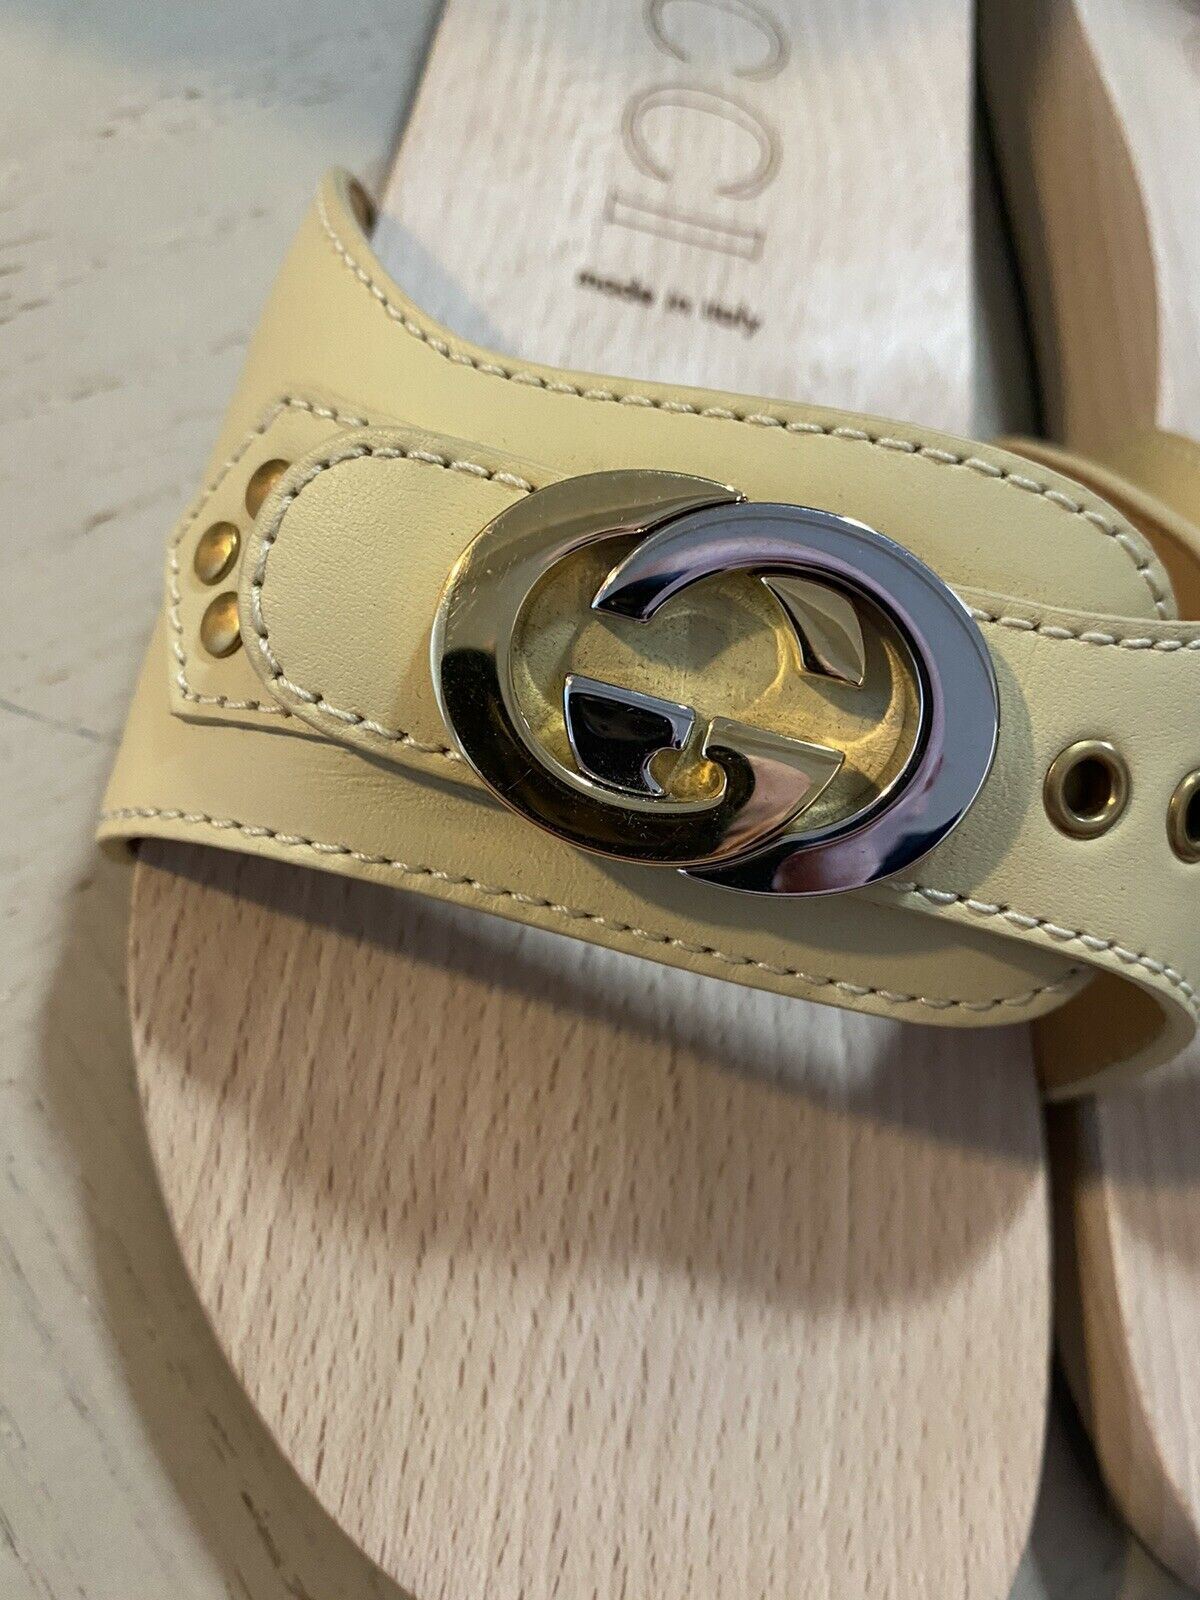 NIB Gucci Herren-Sandalen aus Leder/Holz, Weiß/Creme, 9,5 US/8,5 UK